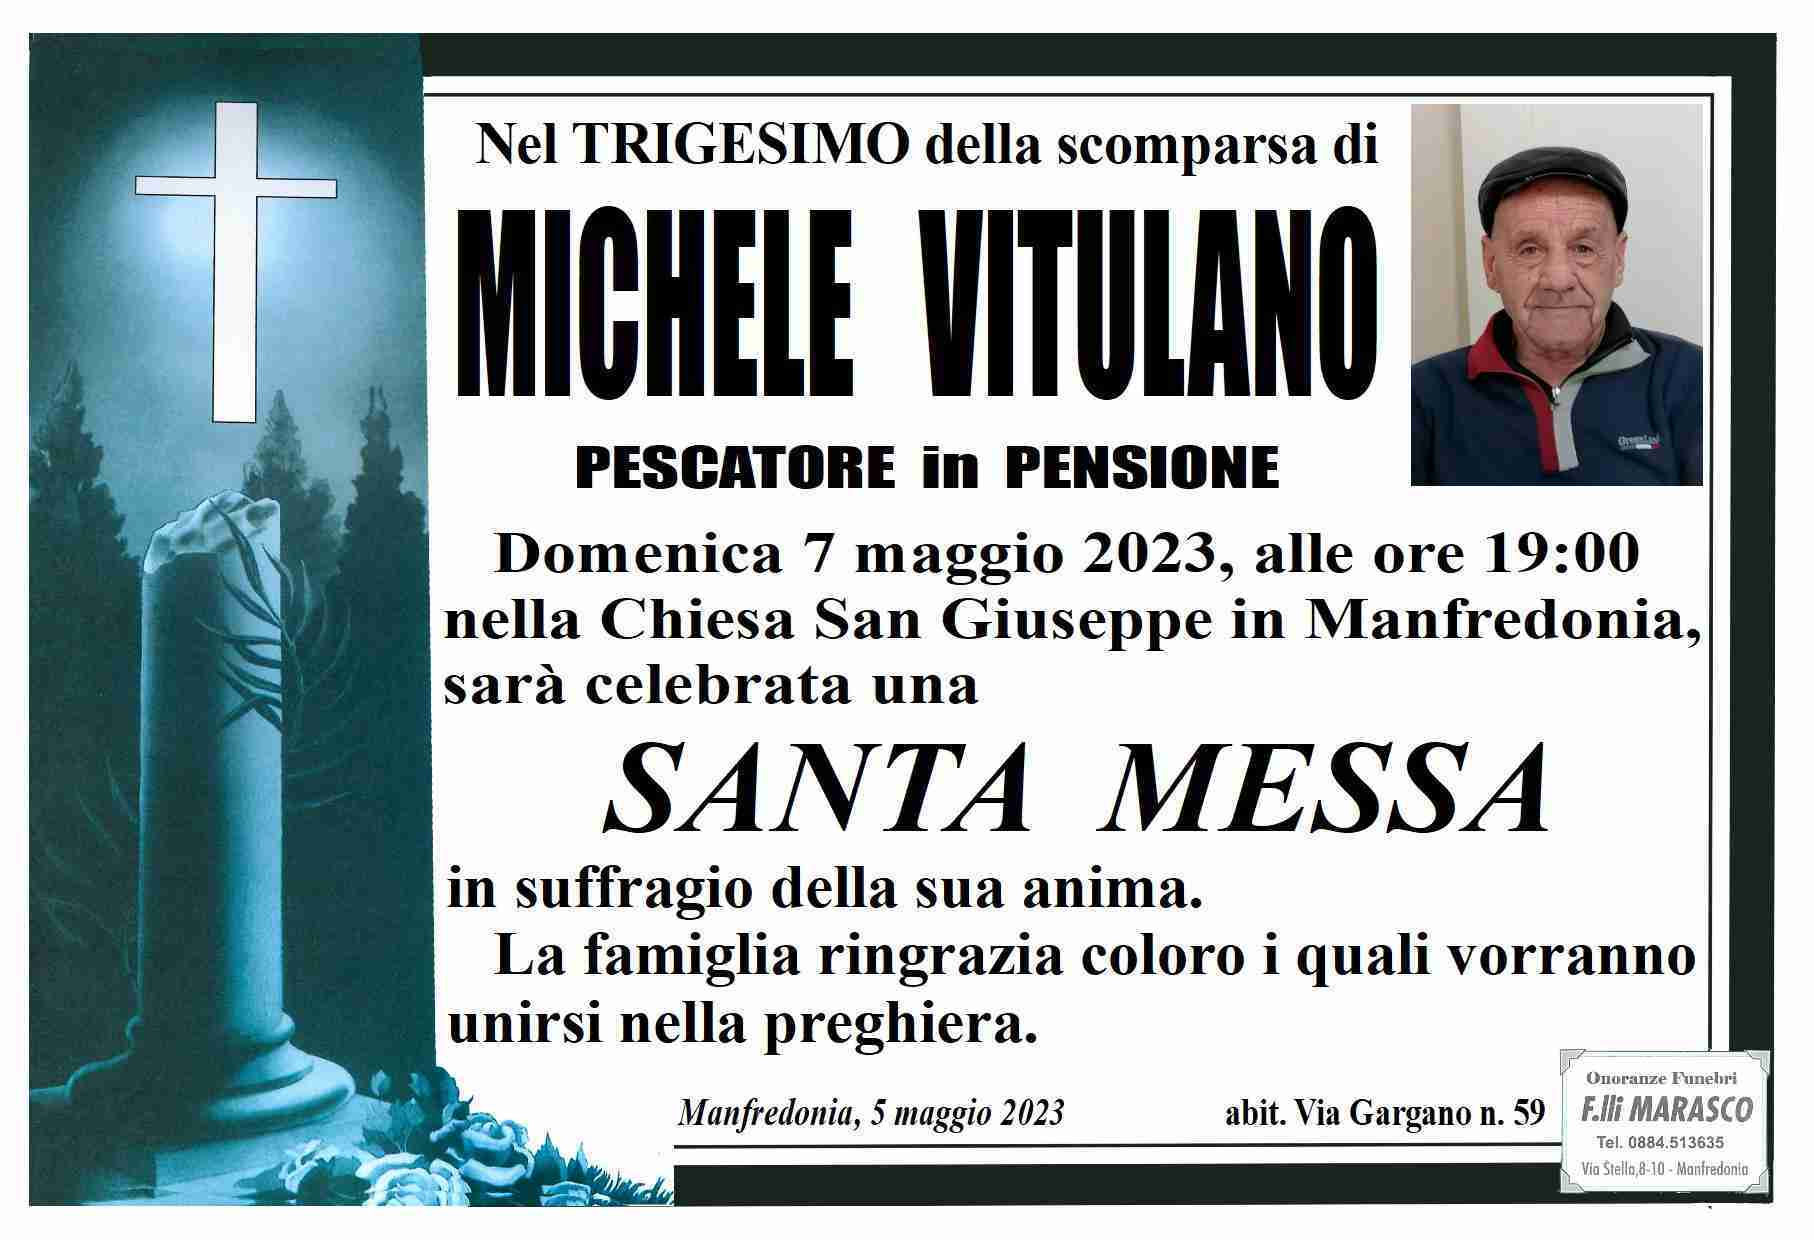 Michele Vitulano